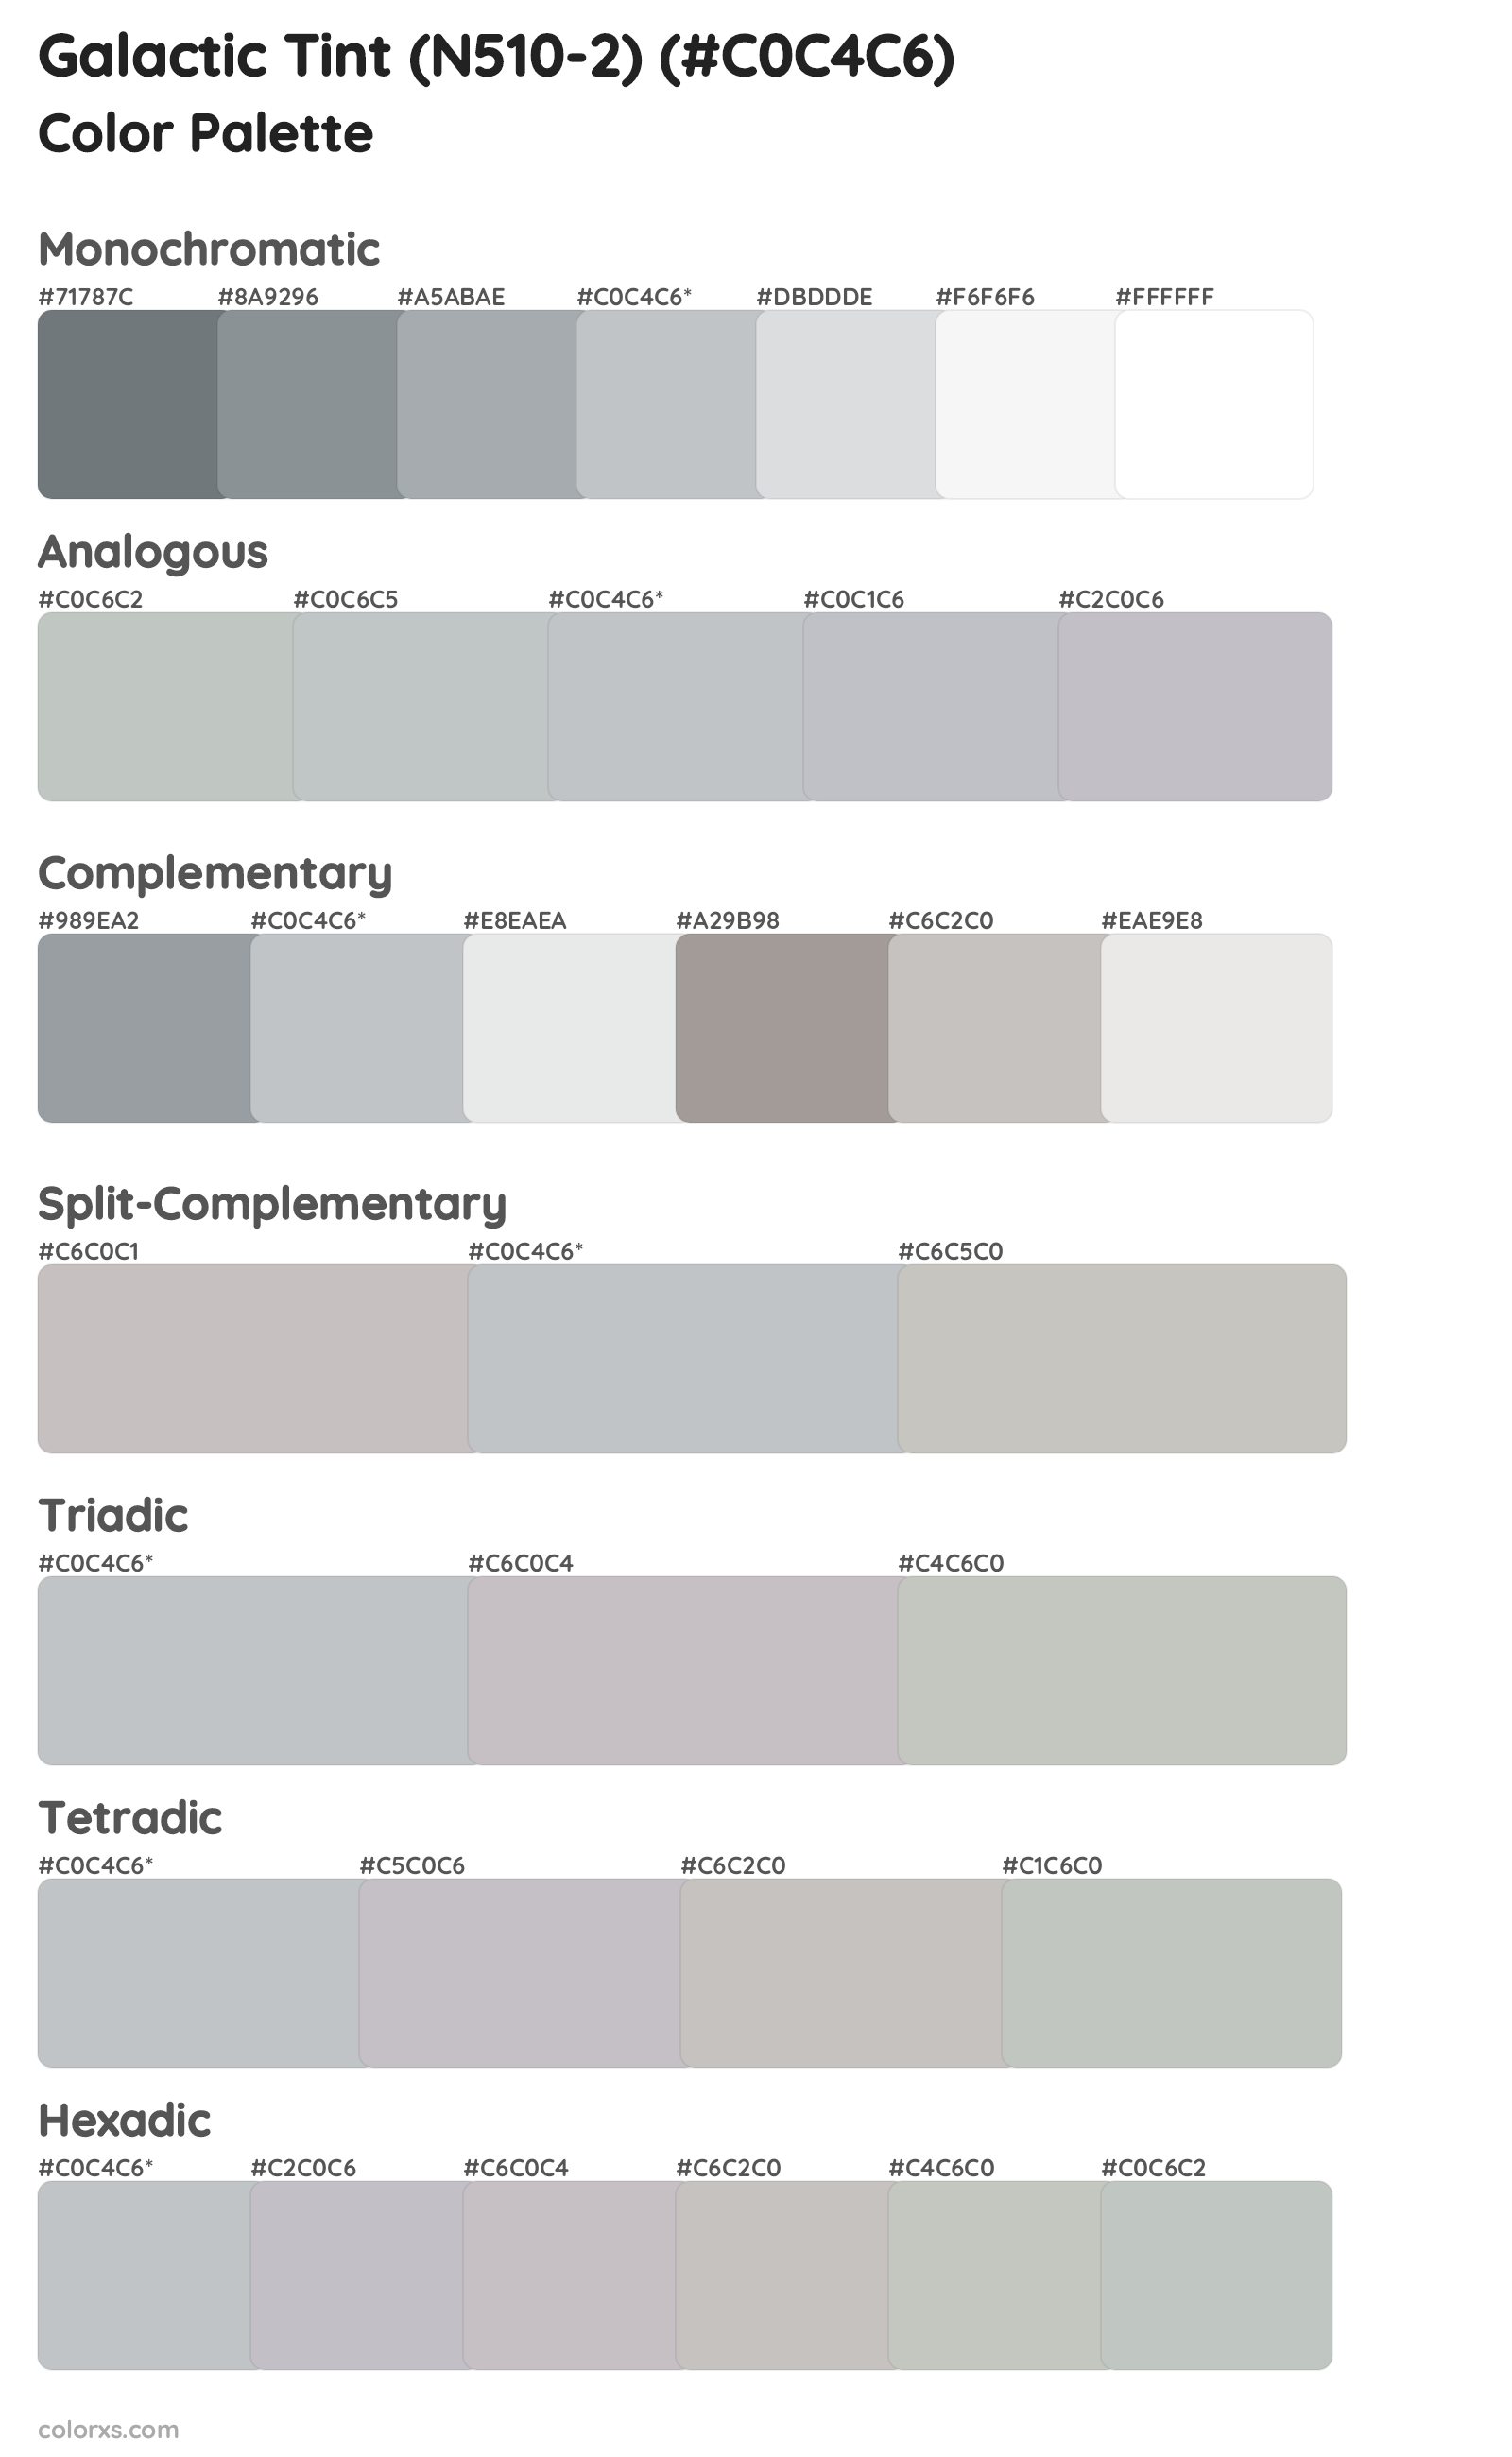 Galactic Tint (N510-2) Color Scheme Palettes